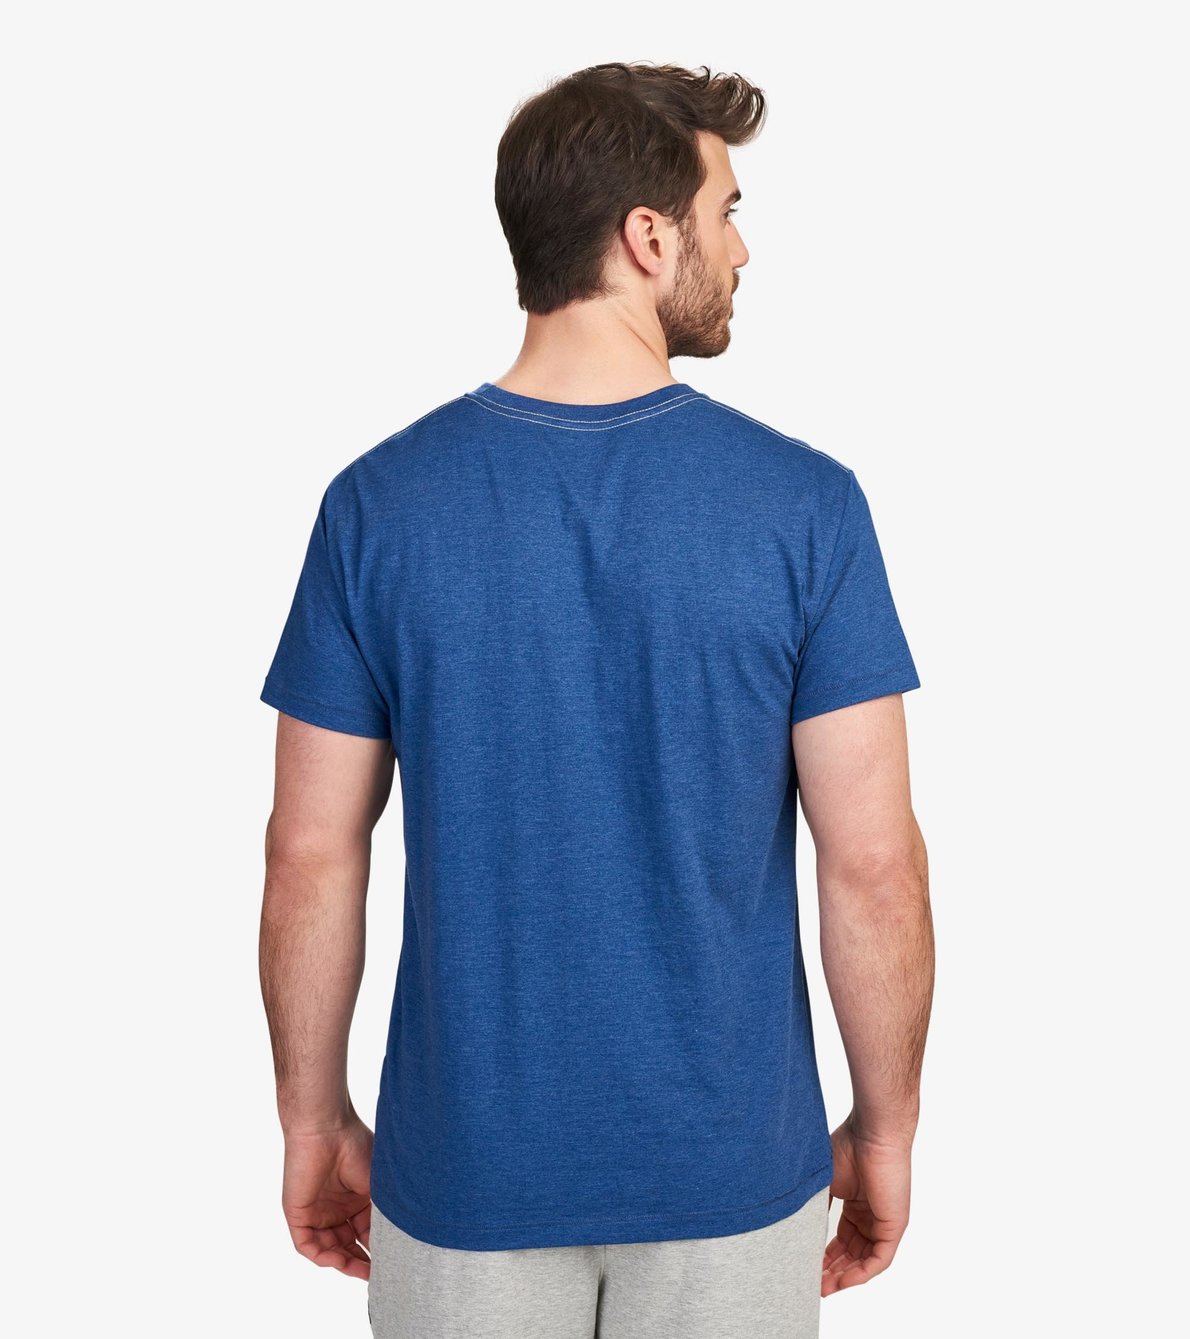 Agrandir l'image de T-shirt pour homme – Castor « Dam it »